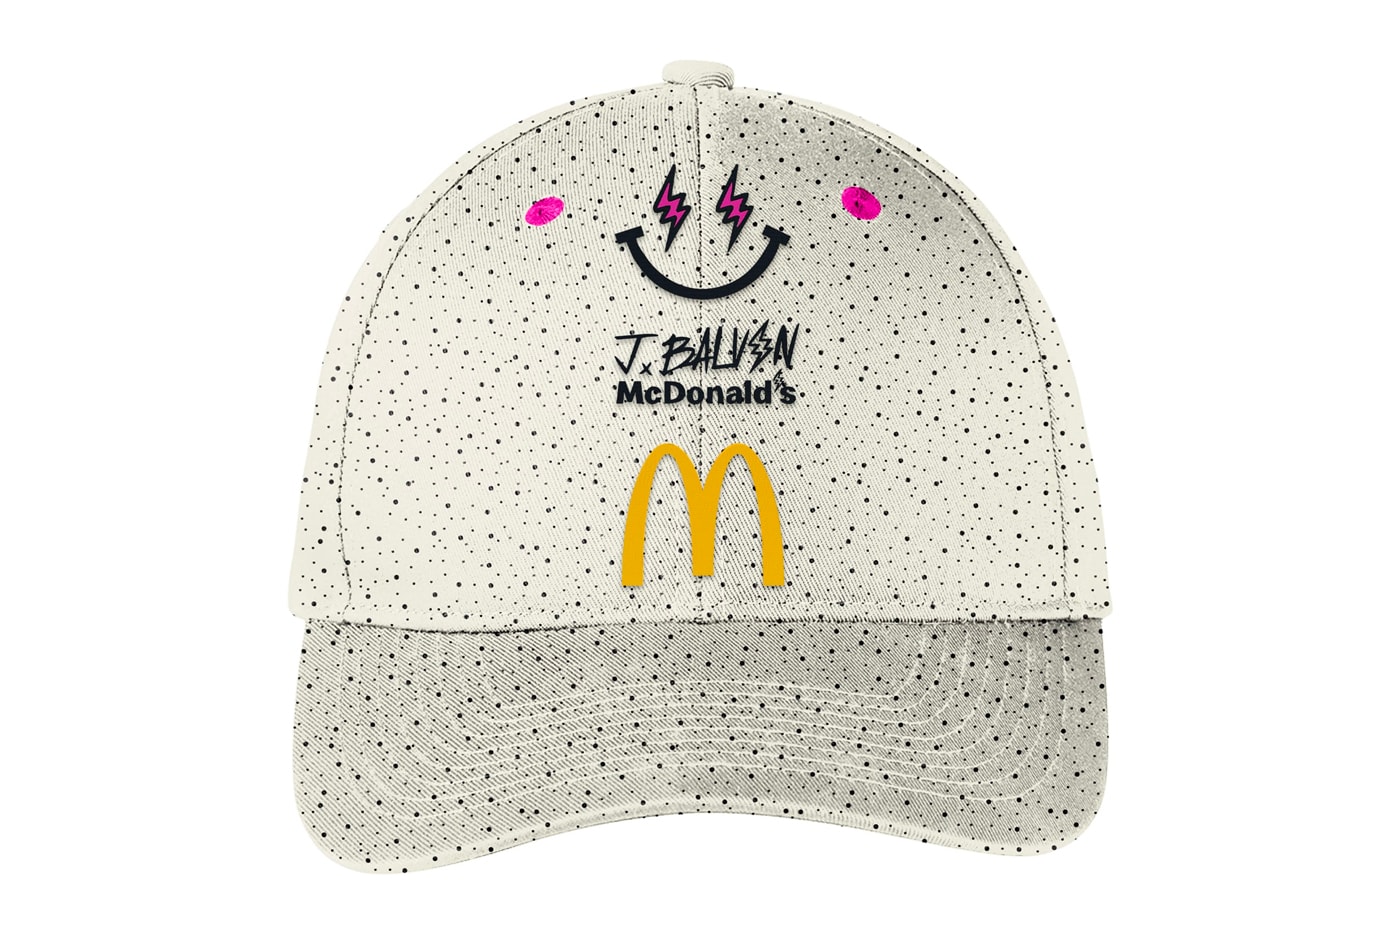 J.Balvin McDonald's Smiley Face T-Shirt 